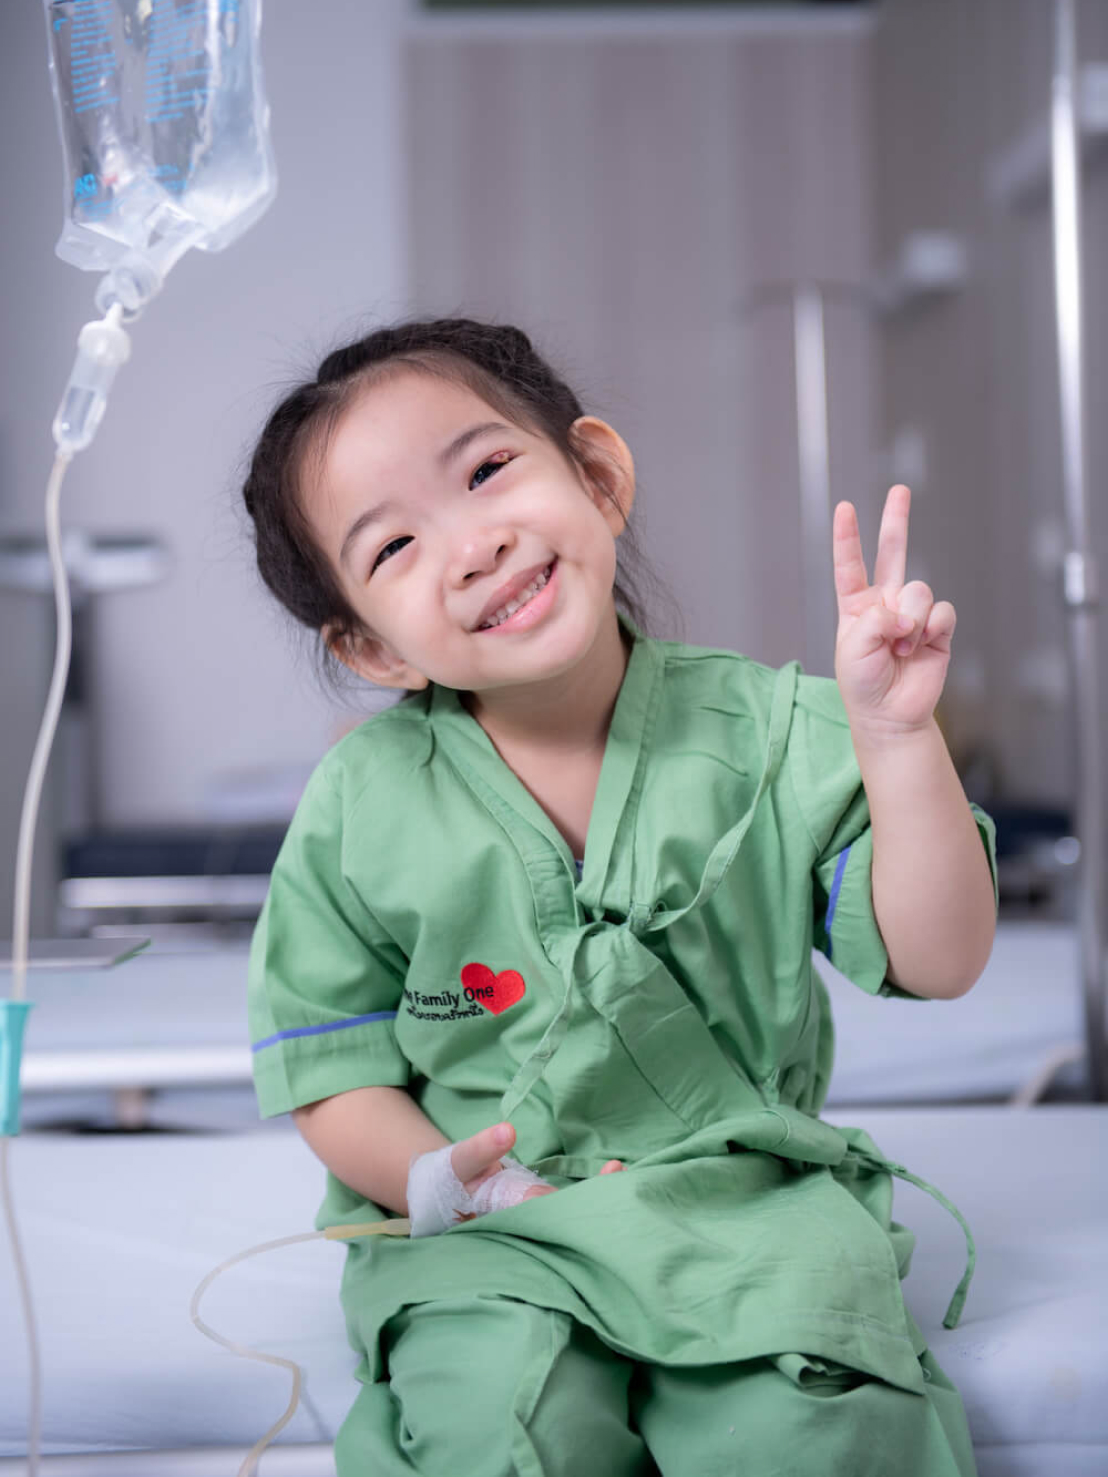 โครงการ Little Miracle ปาฏิหาริย์เล็กๆ เพื่อผู้ป่วยเด็กห้องไอซียู มูลนิธิโรงพยาบาลเด็ก กองทุนอาคารเฉลิมพระเกียรติฯ